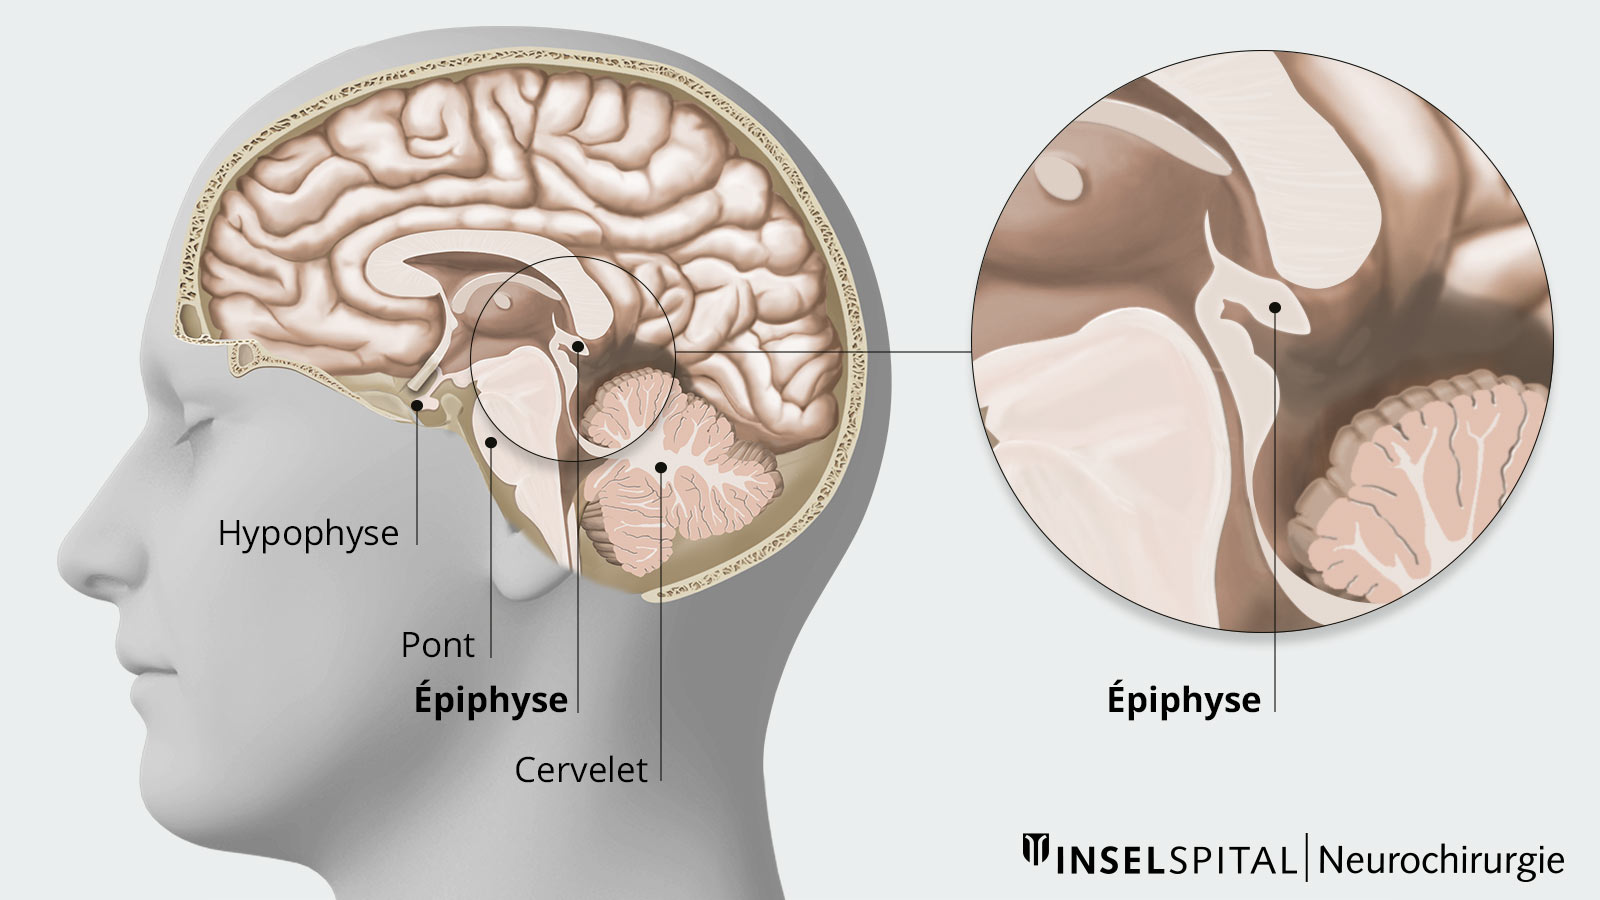 Vue en coupe du cerveau avec hypophyse, pont, épiphyse, cervelet